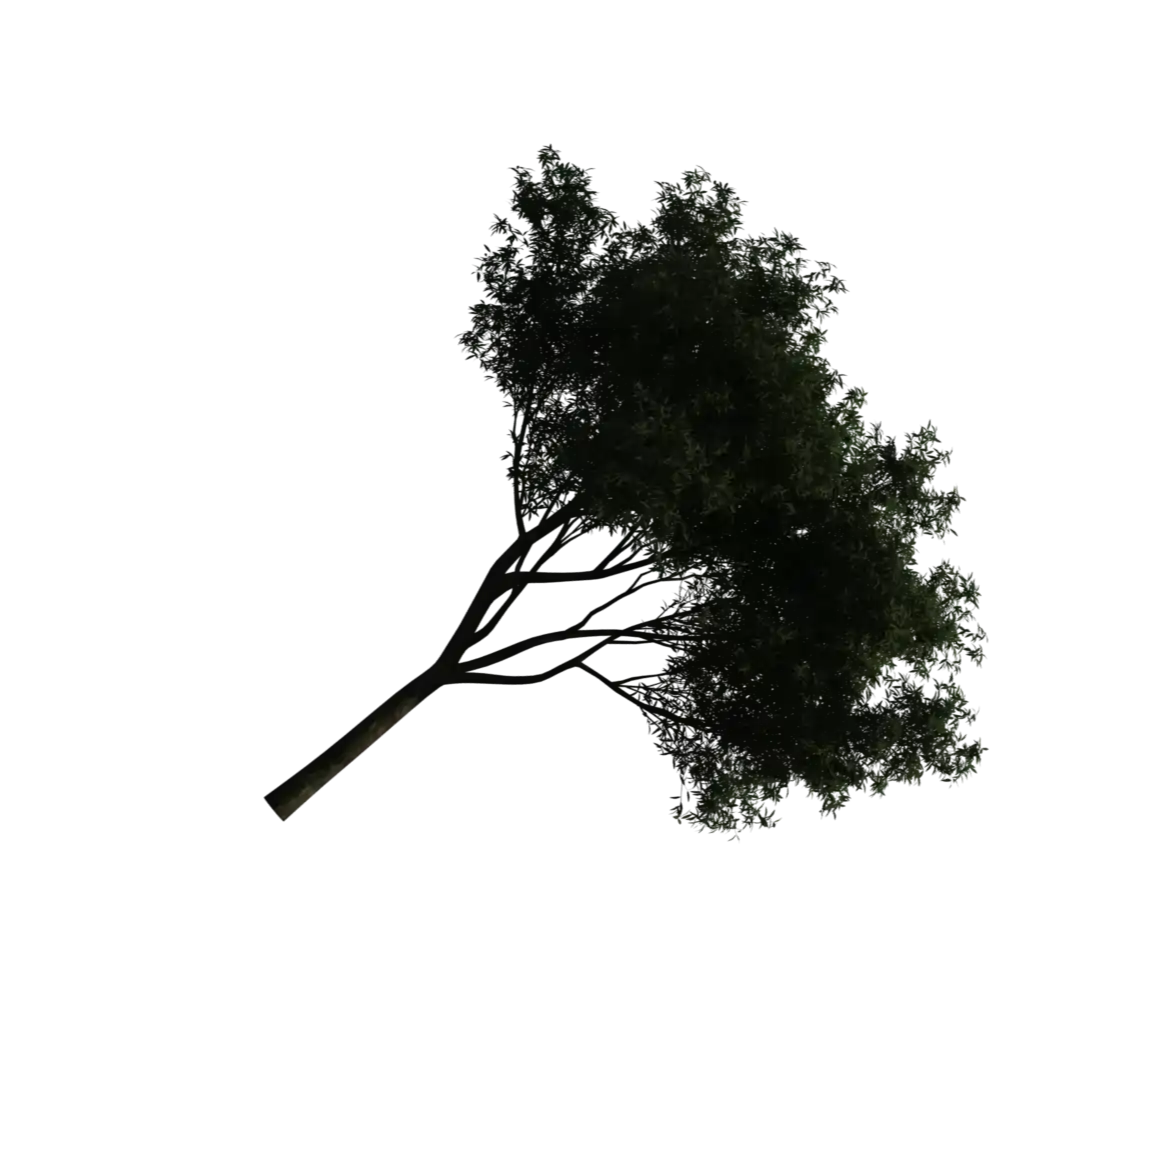 A tree